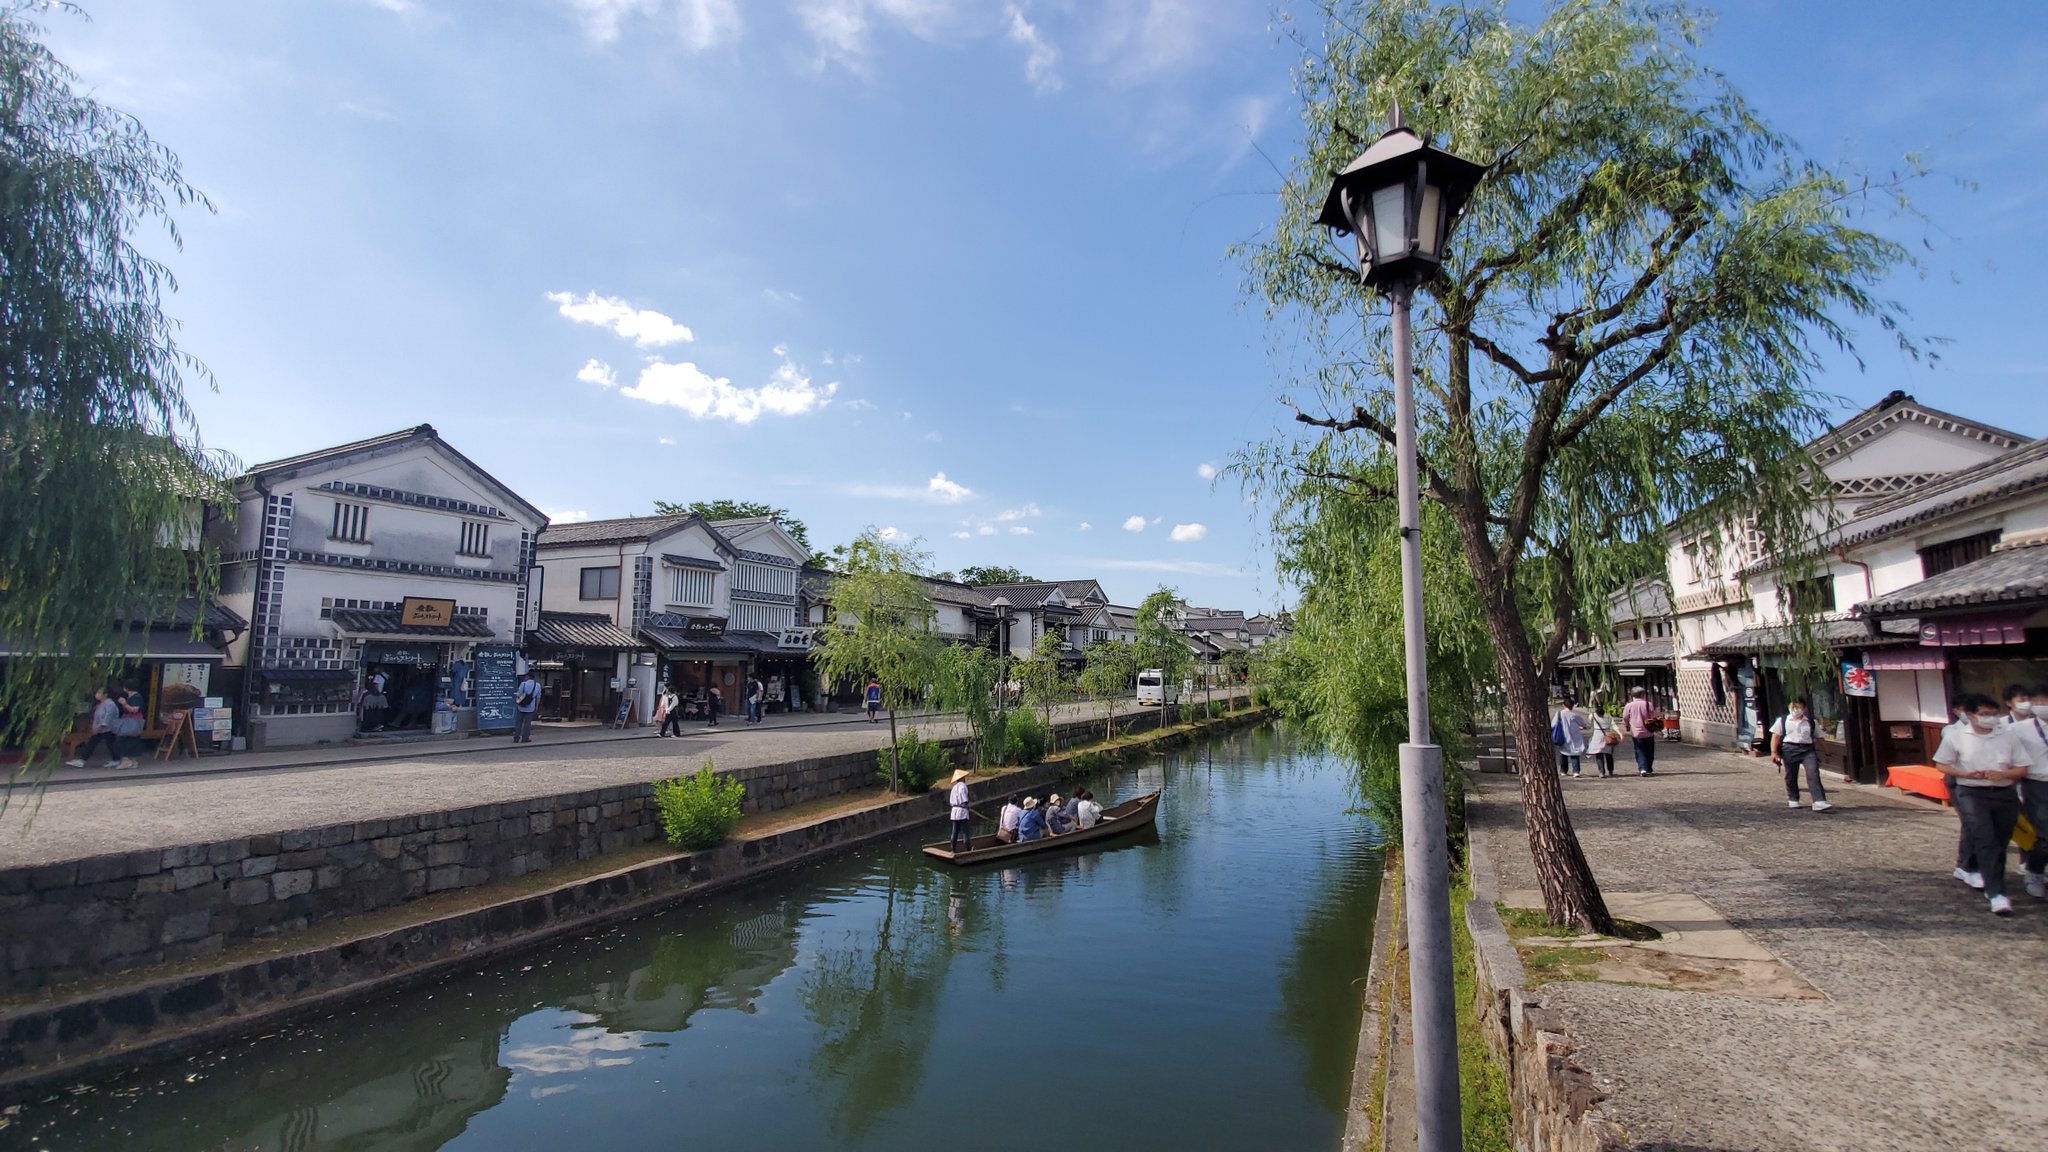 はる旅 日本一周完 Al Twitter 美観地区 江戸時代の雰囲気がある街並みが素敵 自分はこういう江戸時代の雰囲気が好き 倉敷川もあって歩いてて楽しいし 色んな発見がある これわかるかな 一部の建物に写真のやつみたいなのが使われててこういうのもあるんだな